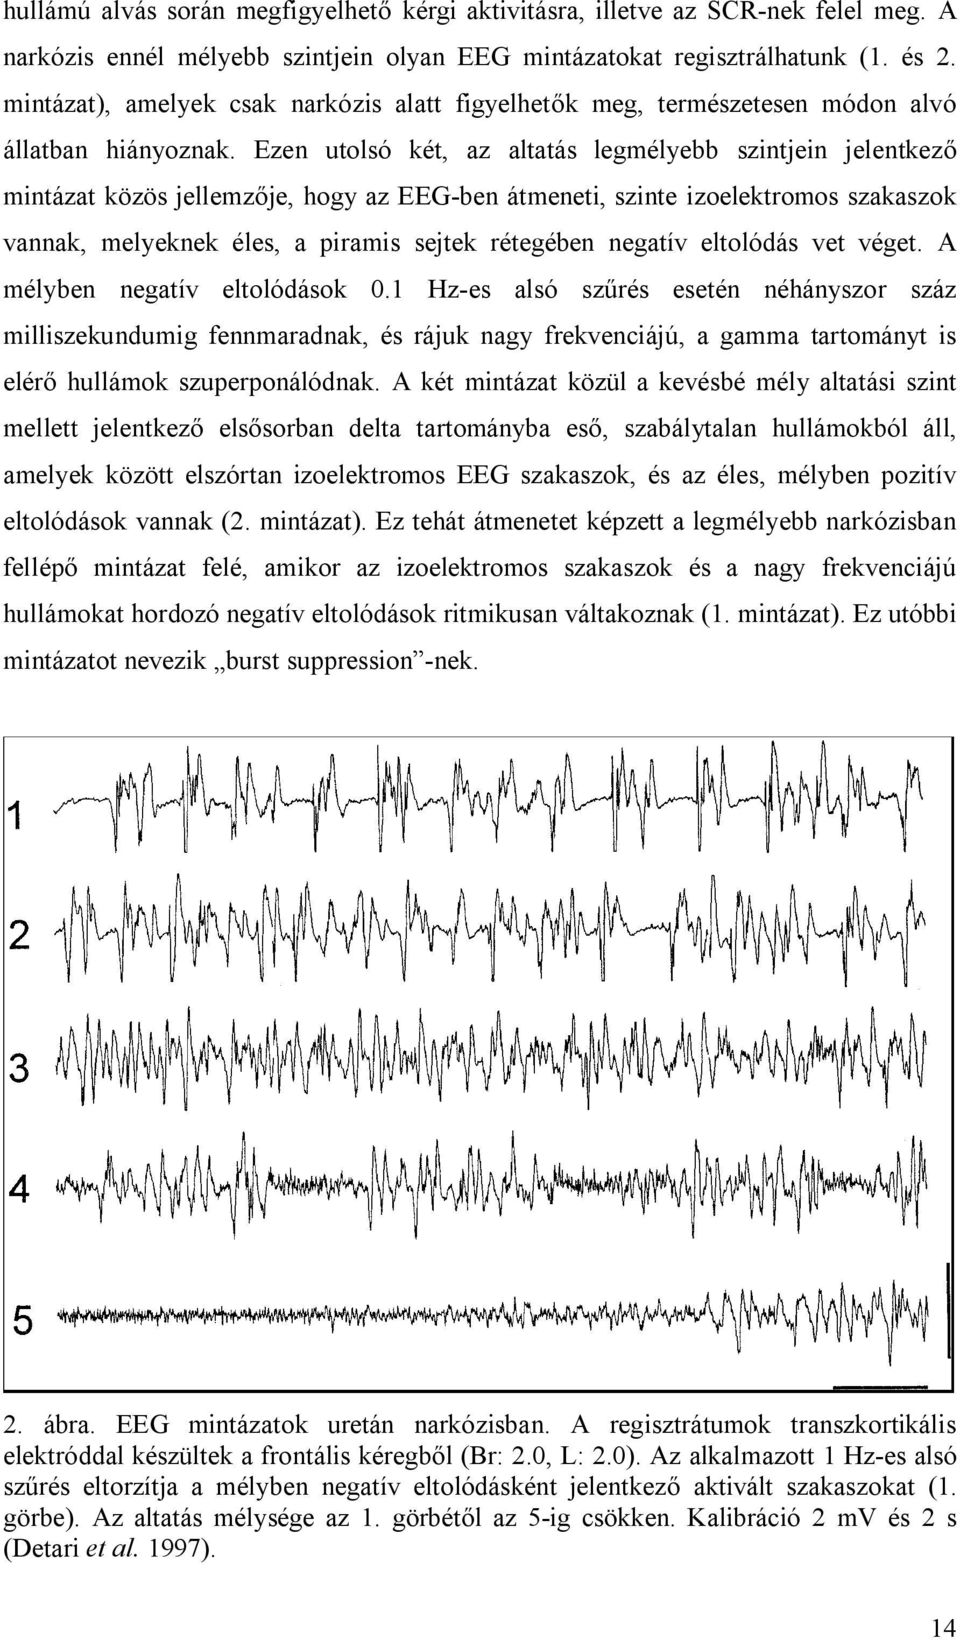 Ezen utolsó két, az altatás legmélyebb szintjein jelentkező mintázat közös jellemzője, hogy az EEG-ben átmeneti, szinte izoelektromos szakaszok vannak, melyeknek éles, a piramis sejtek rétegében